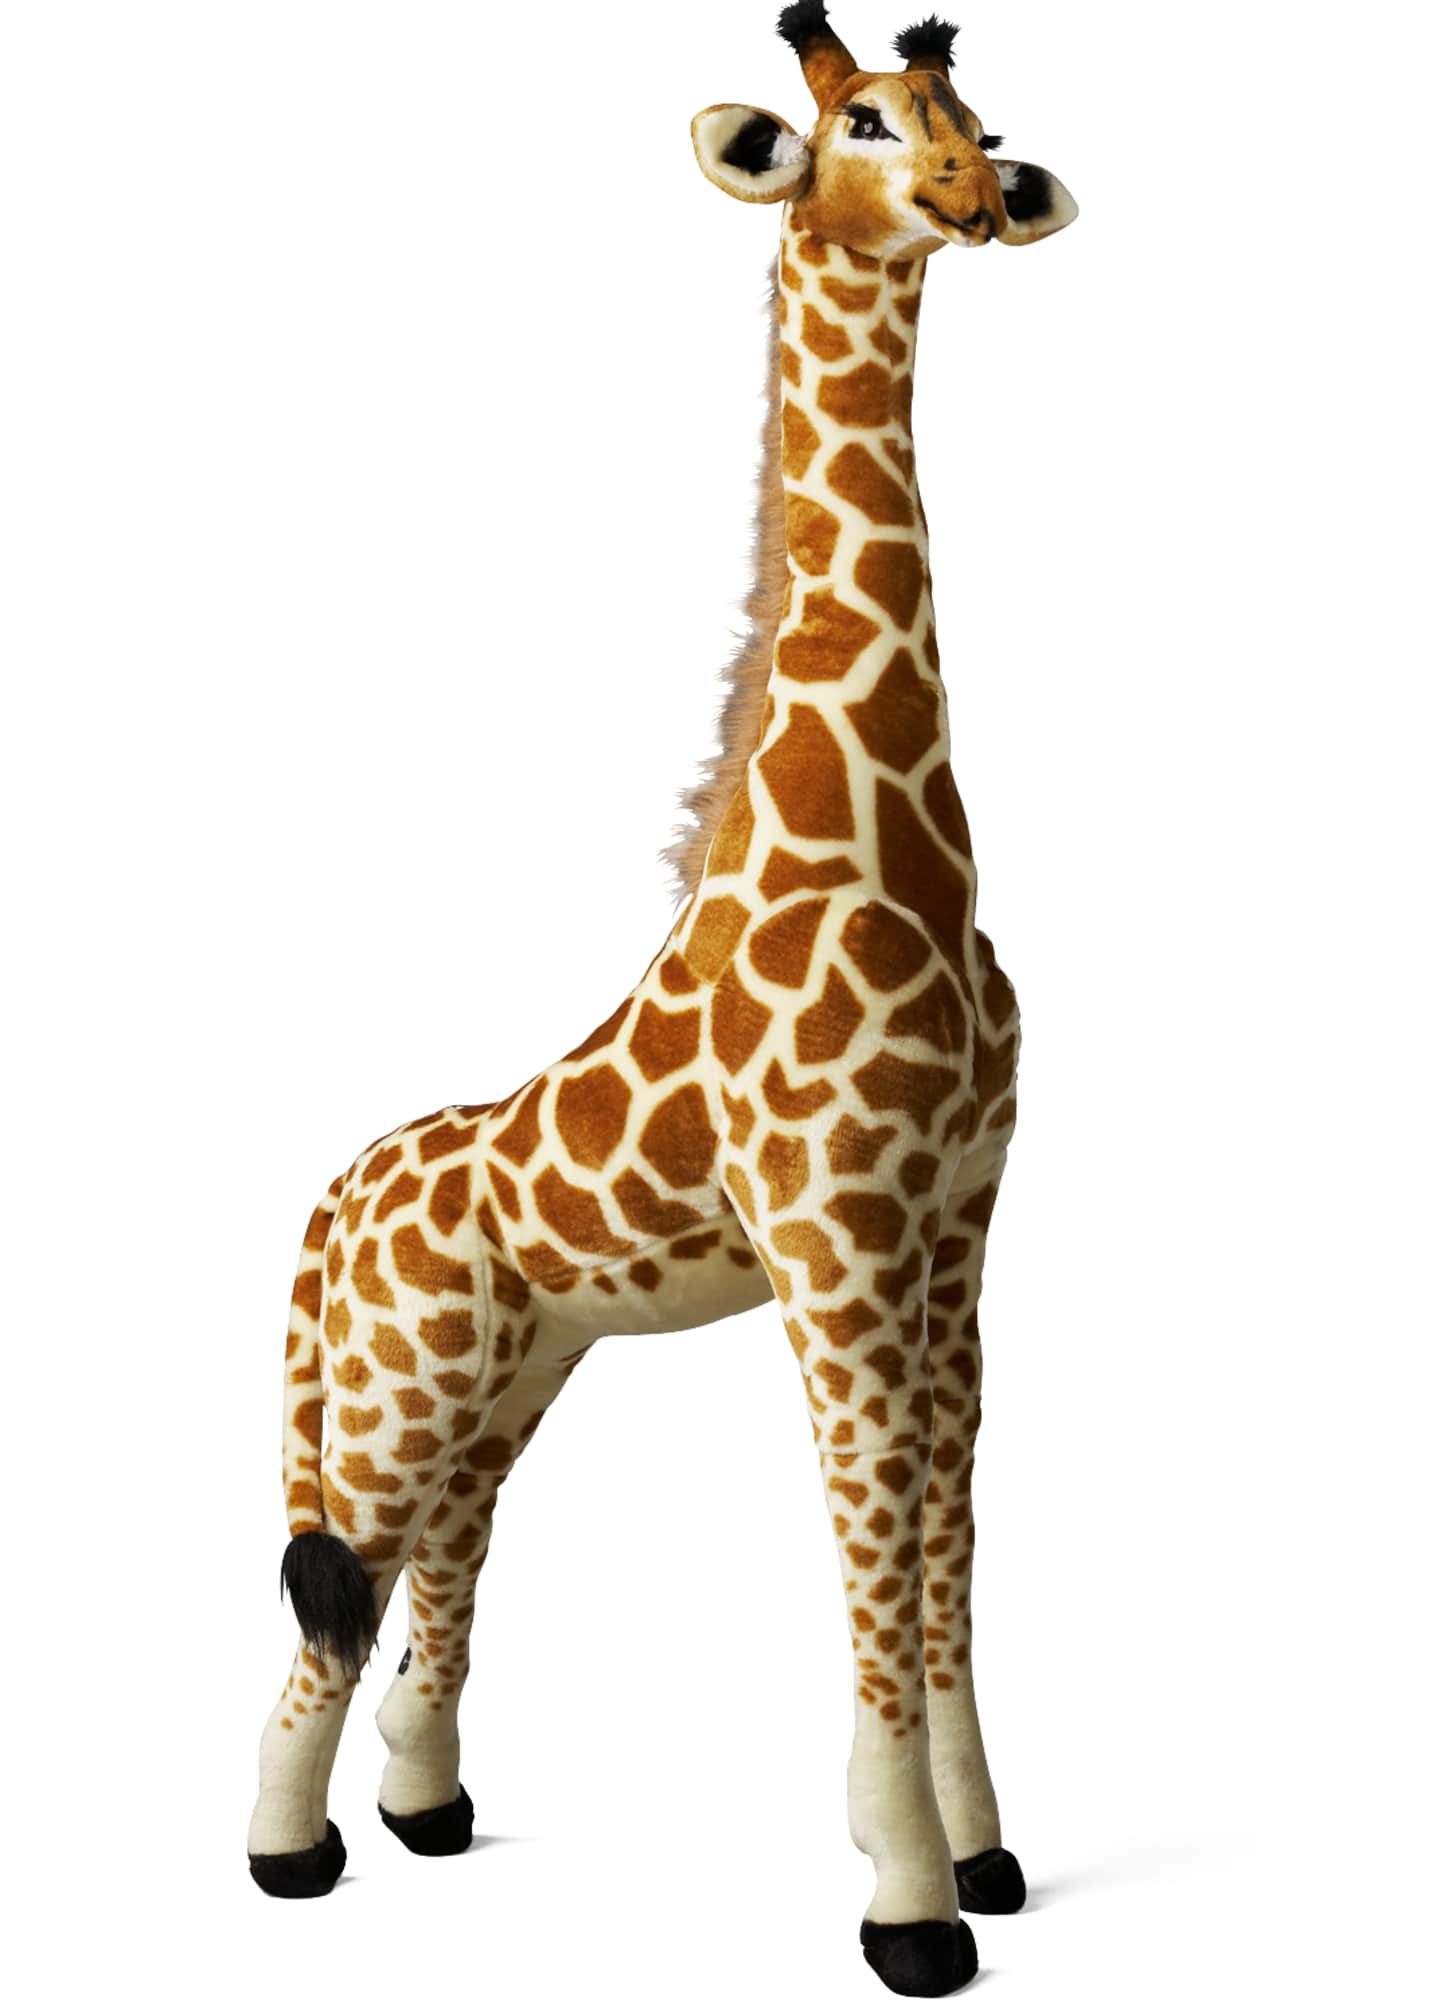 melissa and doug large giraffe